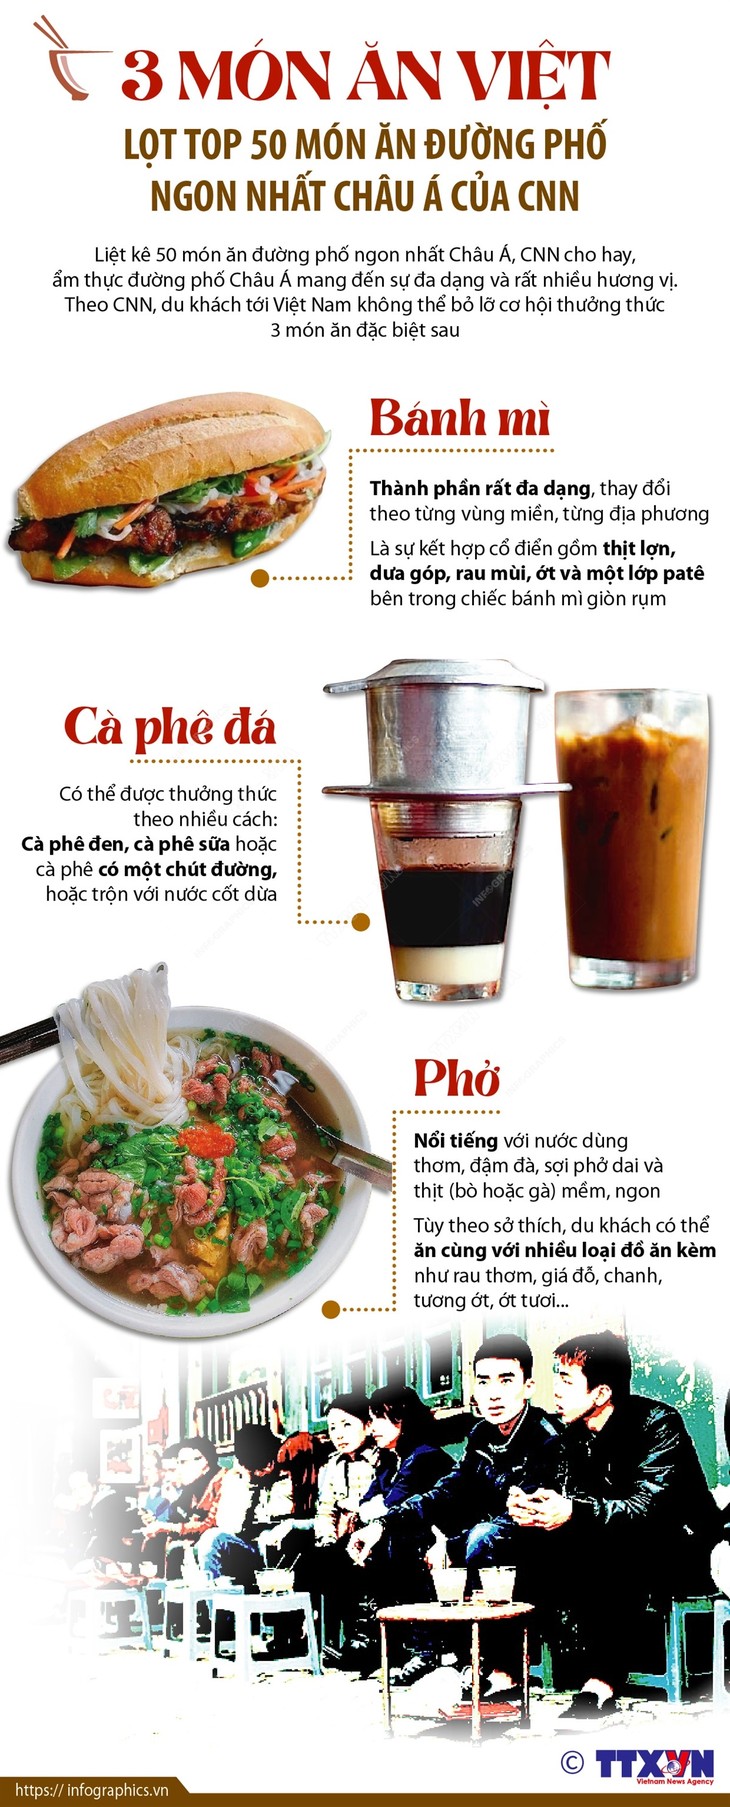 CNN listet drei vietnamesische Gerichte als bestes asiatisches Street Food auf - ảnh 1